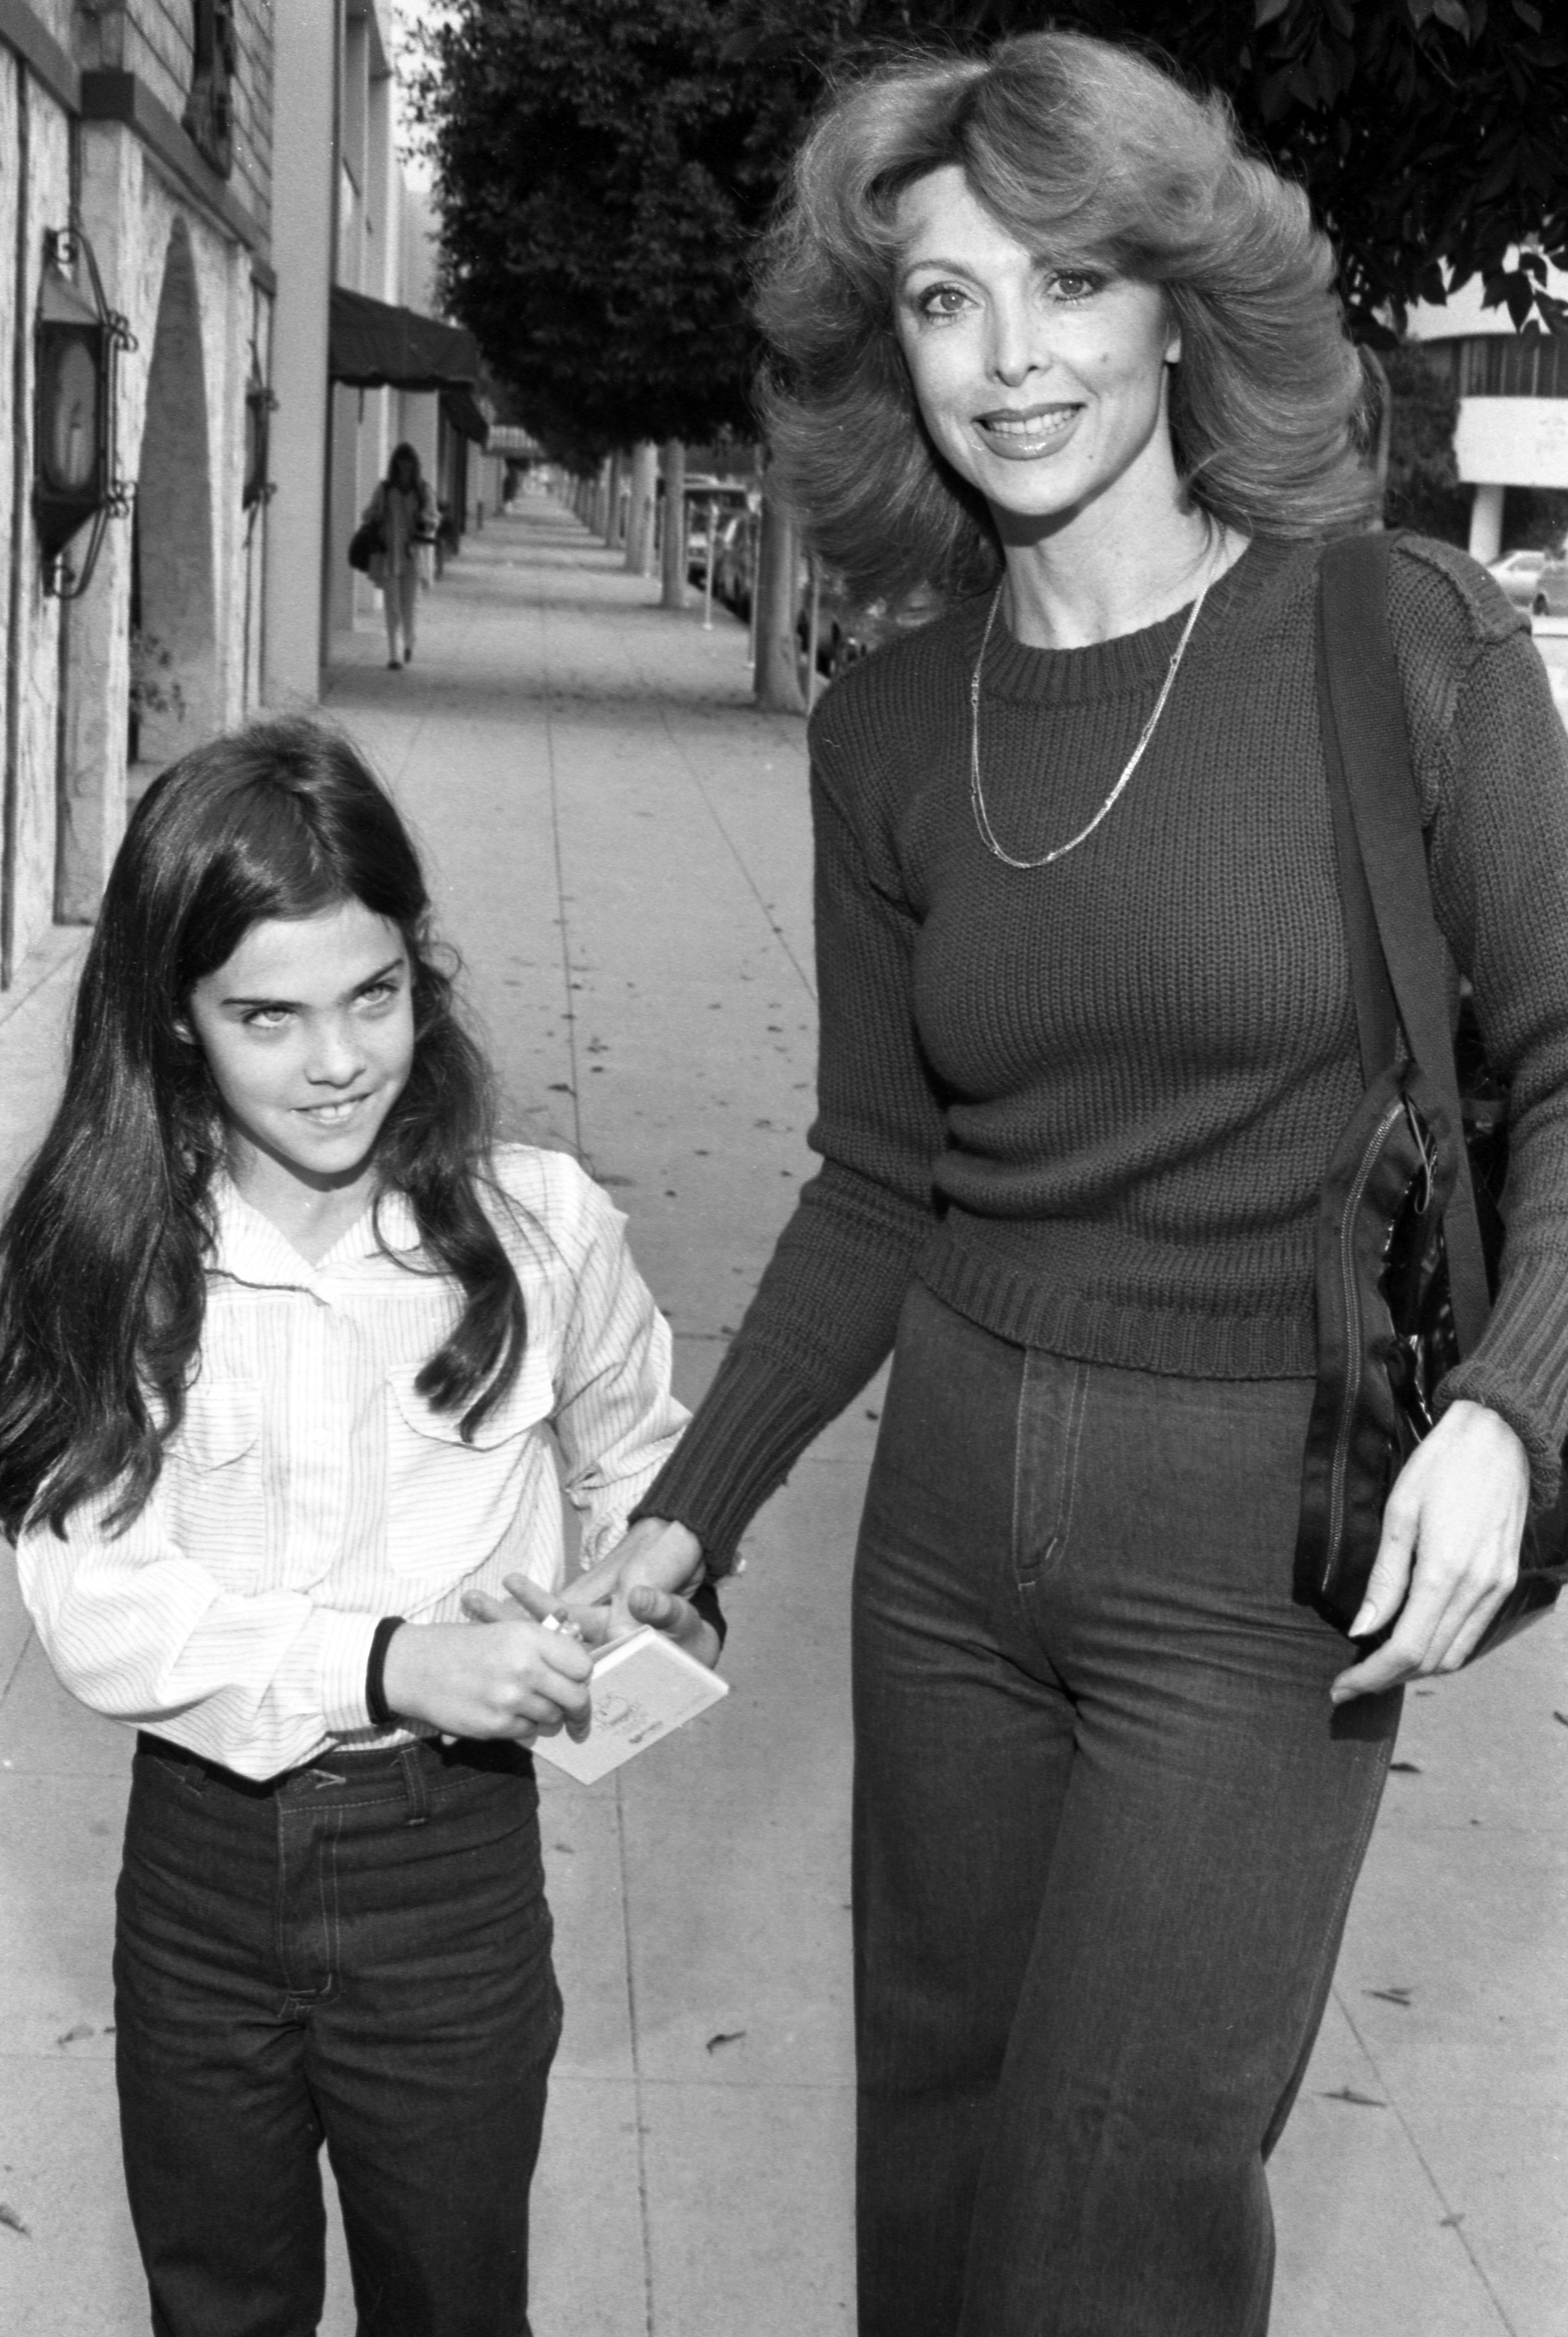 Caprice Crane et Tina Louise photographiées le 4 février 1980 | Sources : Getty Images